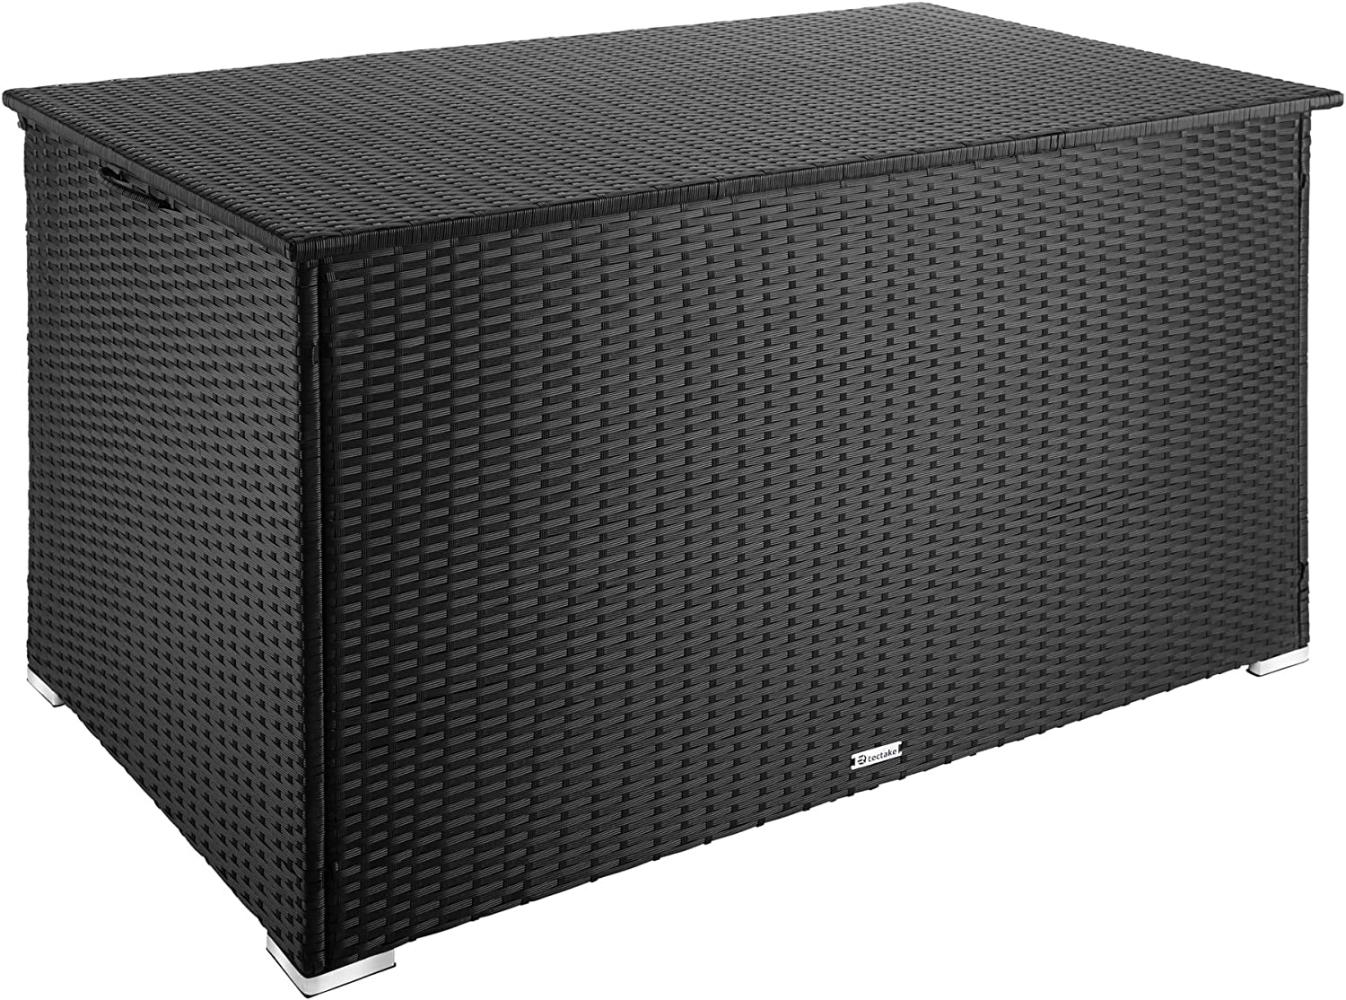 Auflagenbox mit Aluminiumgestell Oslo, 145x82,5x79,5cm schwarz Bild 1